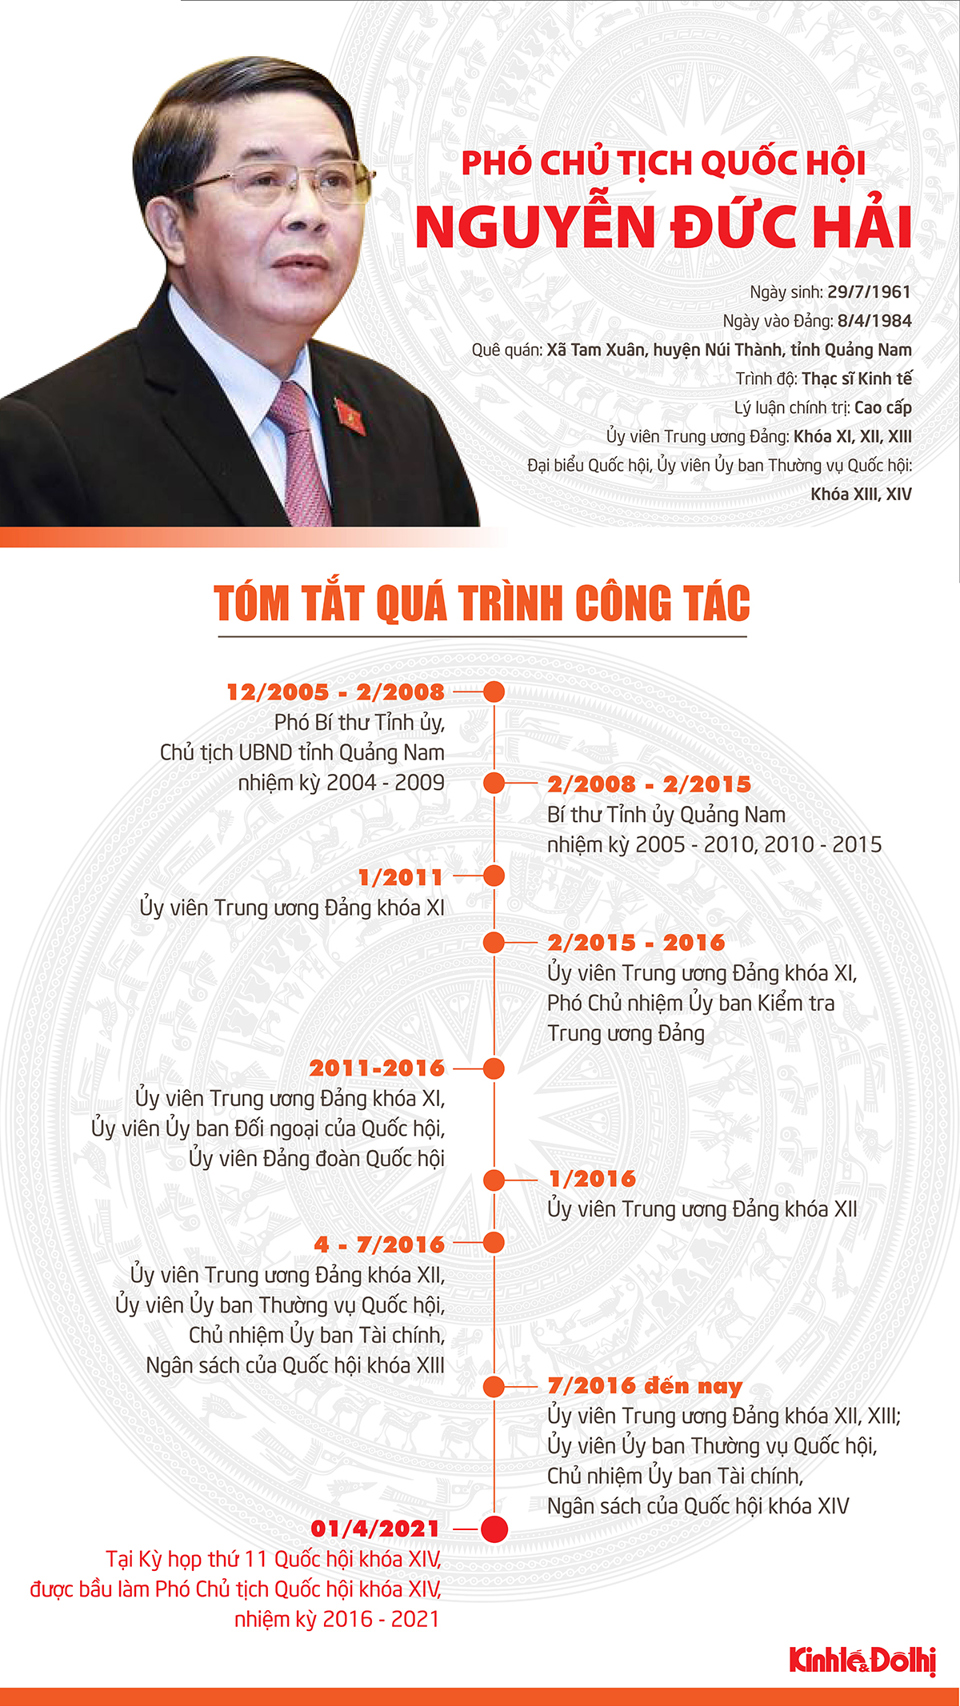 [Infographic] Tóm tắt quá trình công tác của tân Phó Chủ tịch Quốc hội Nguyễn Đức Hải - Ảnh 1